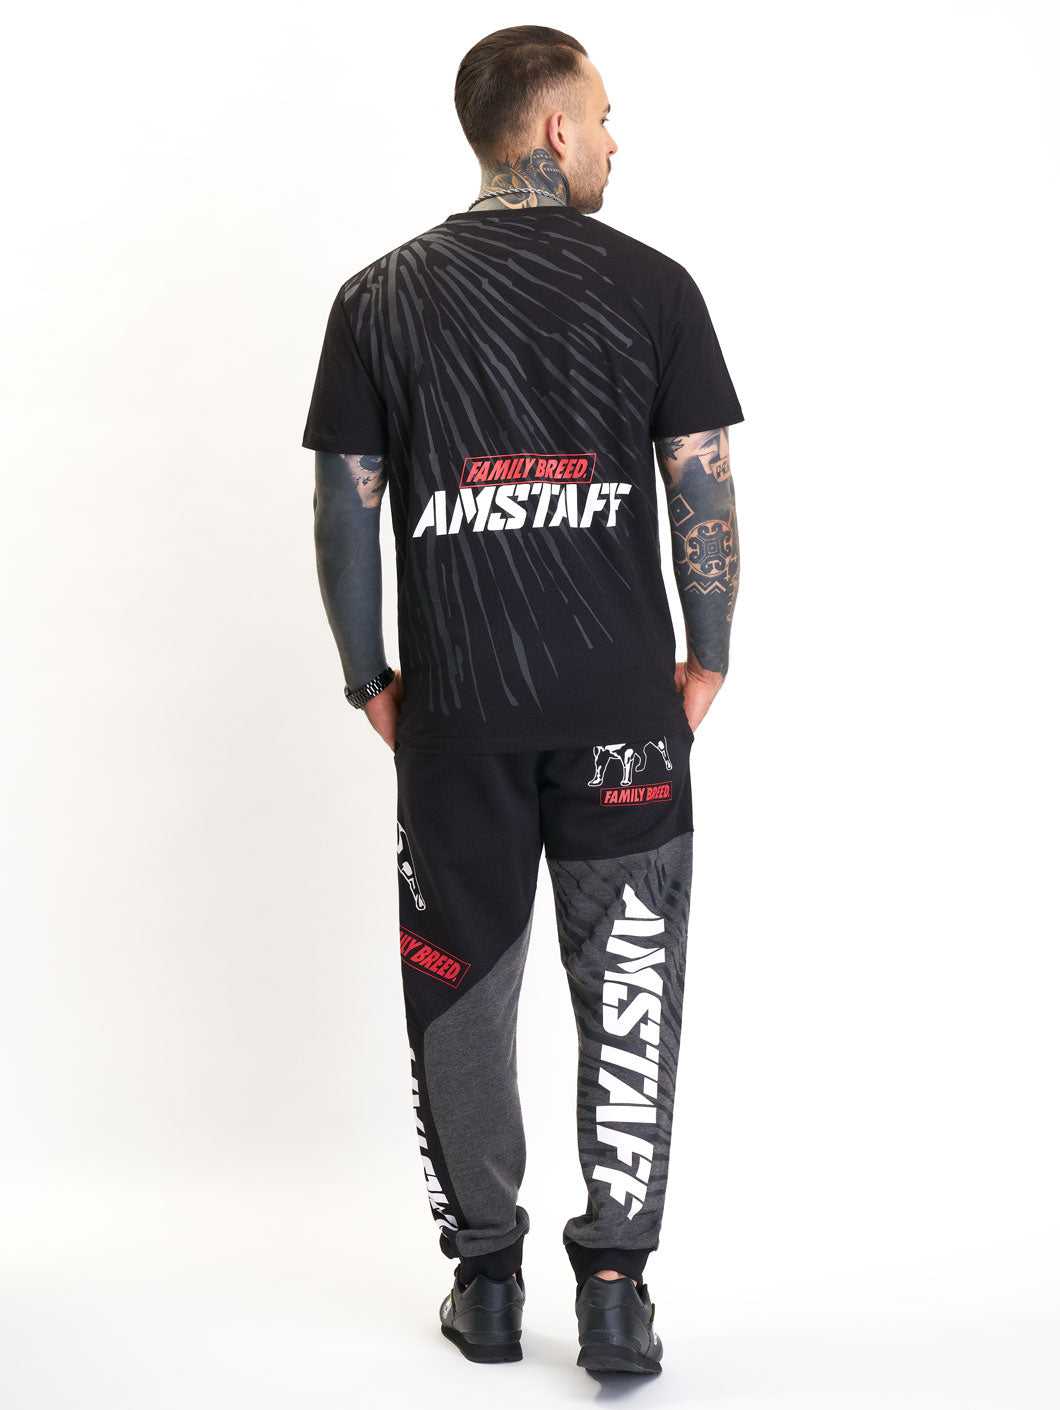 Amstaff Barco T-Shirt Black/Grey